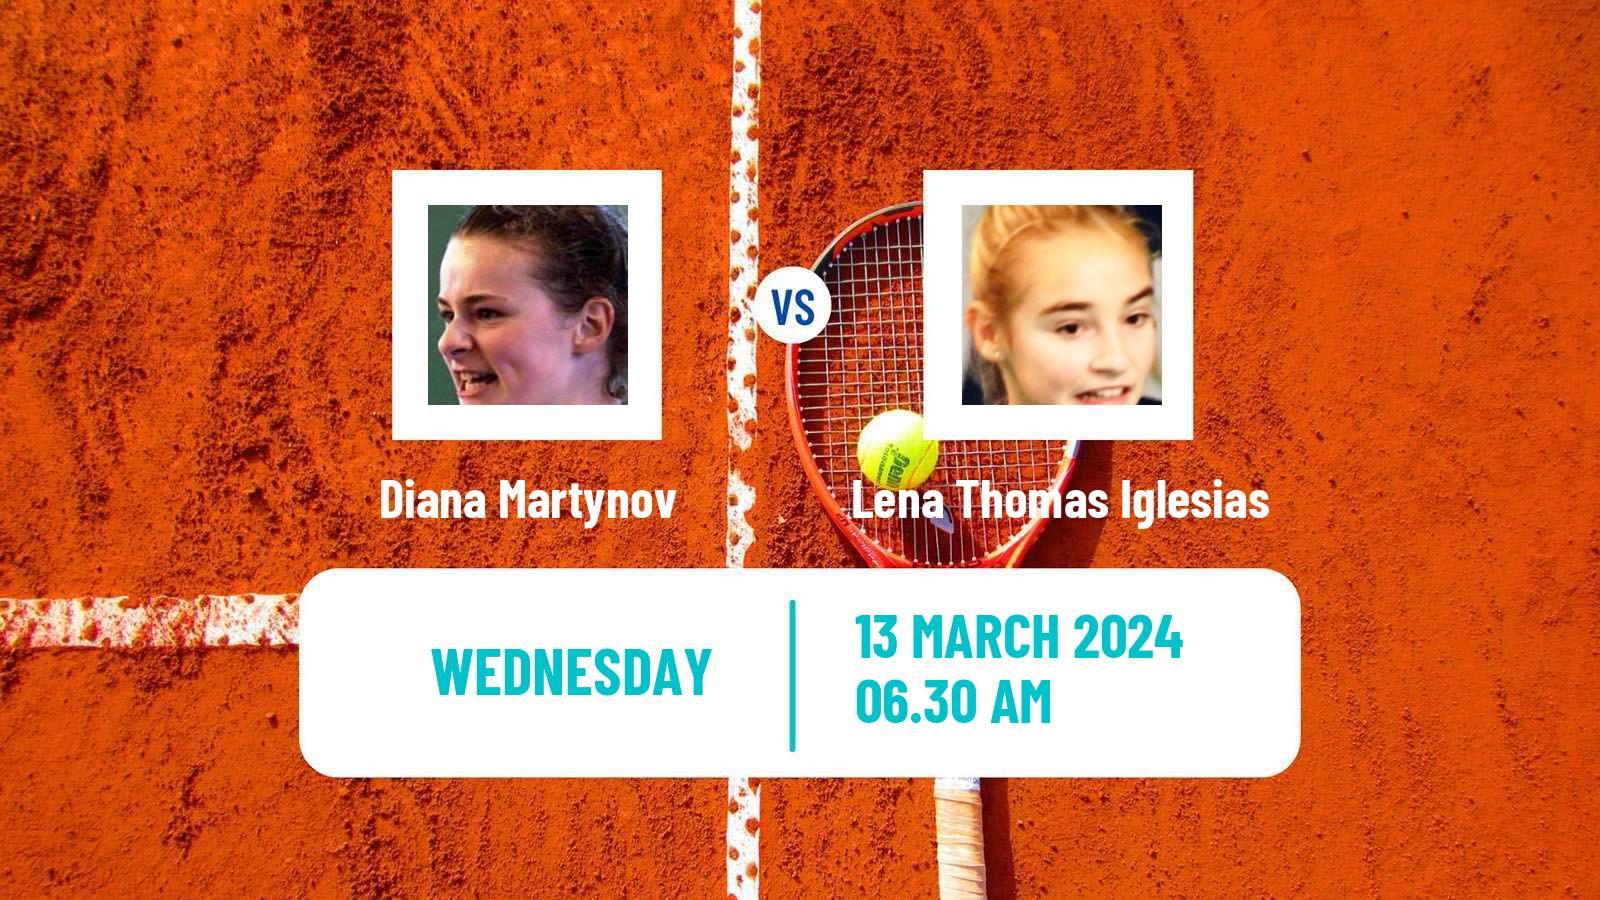 Tennis ITF W15 Monastir 9 Women Diana Martynov - Lena Thomas Iglesias